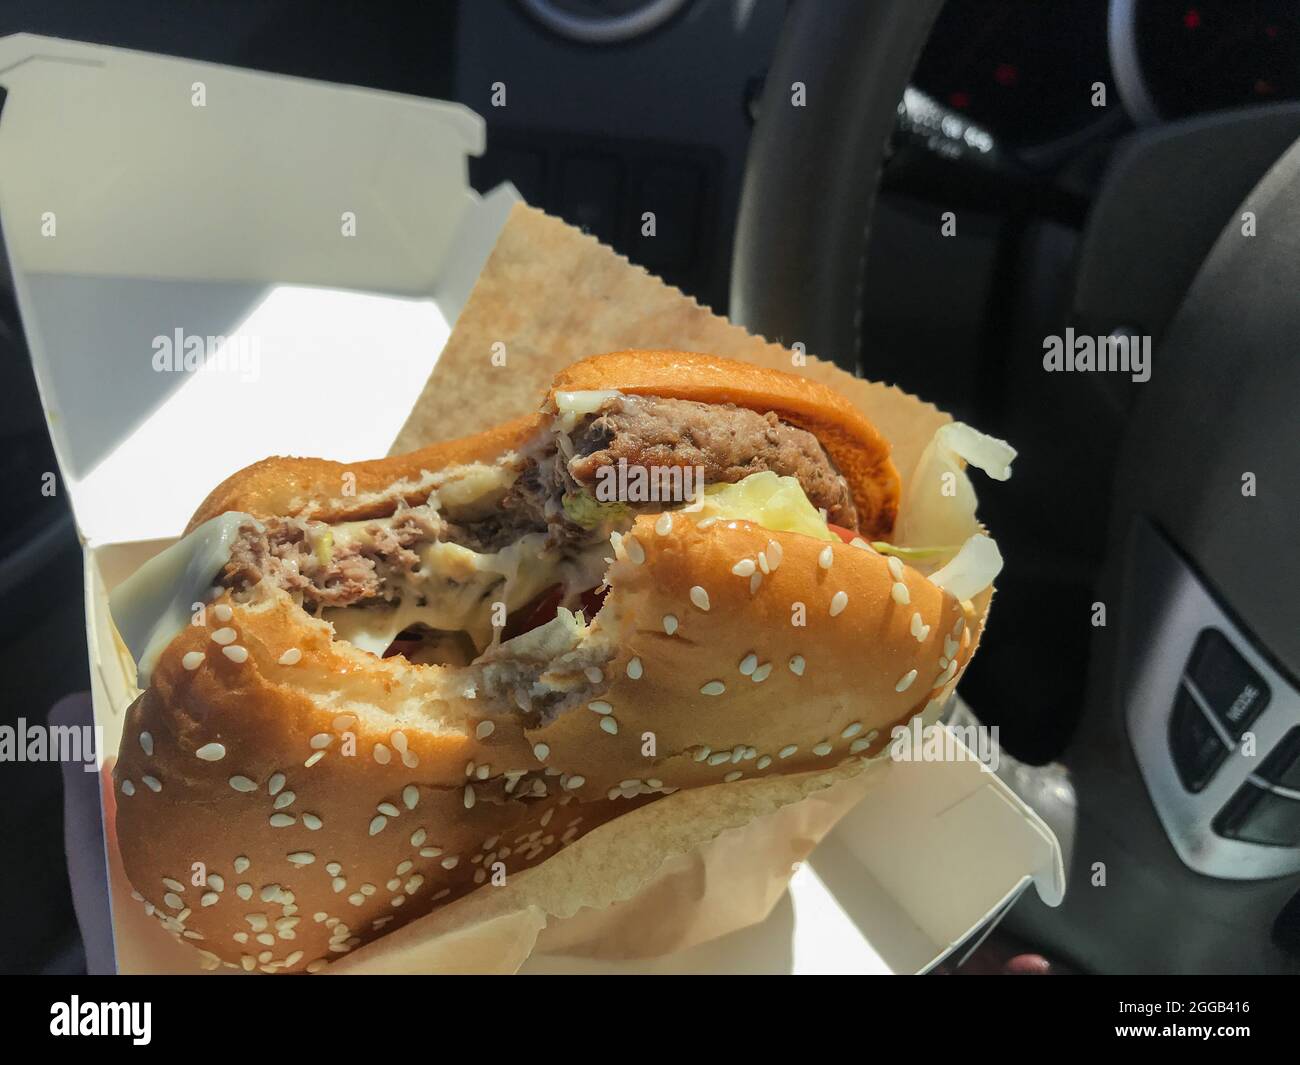 Essen während der Fahrt: Ein gebissene Burger in den Händen des Fahrers im Auto vor dem Hintergrund des Lenkrads. Stockfoto